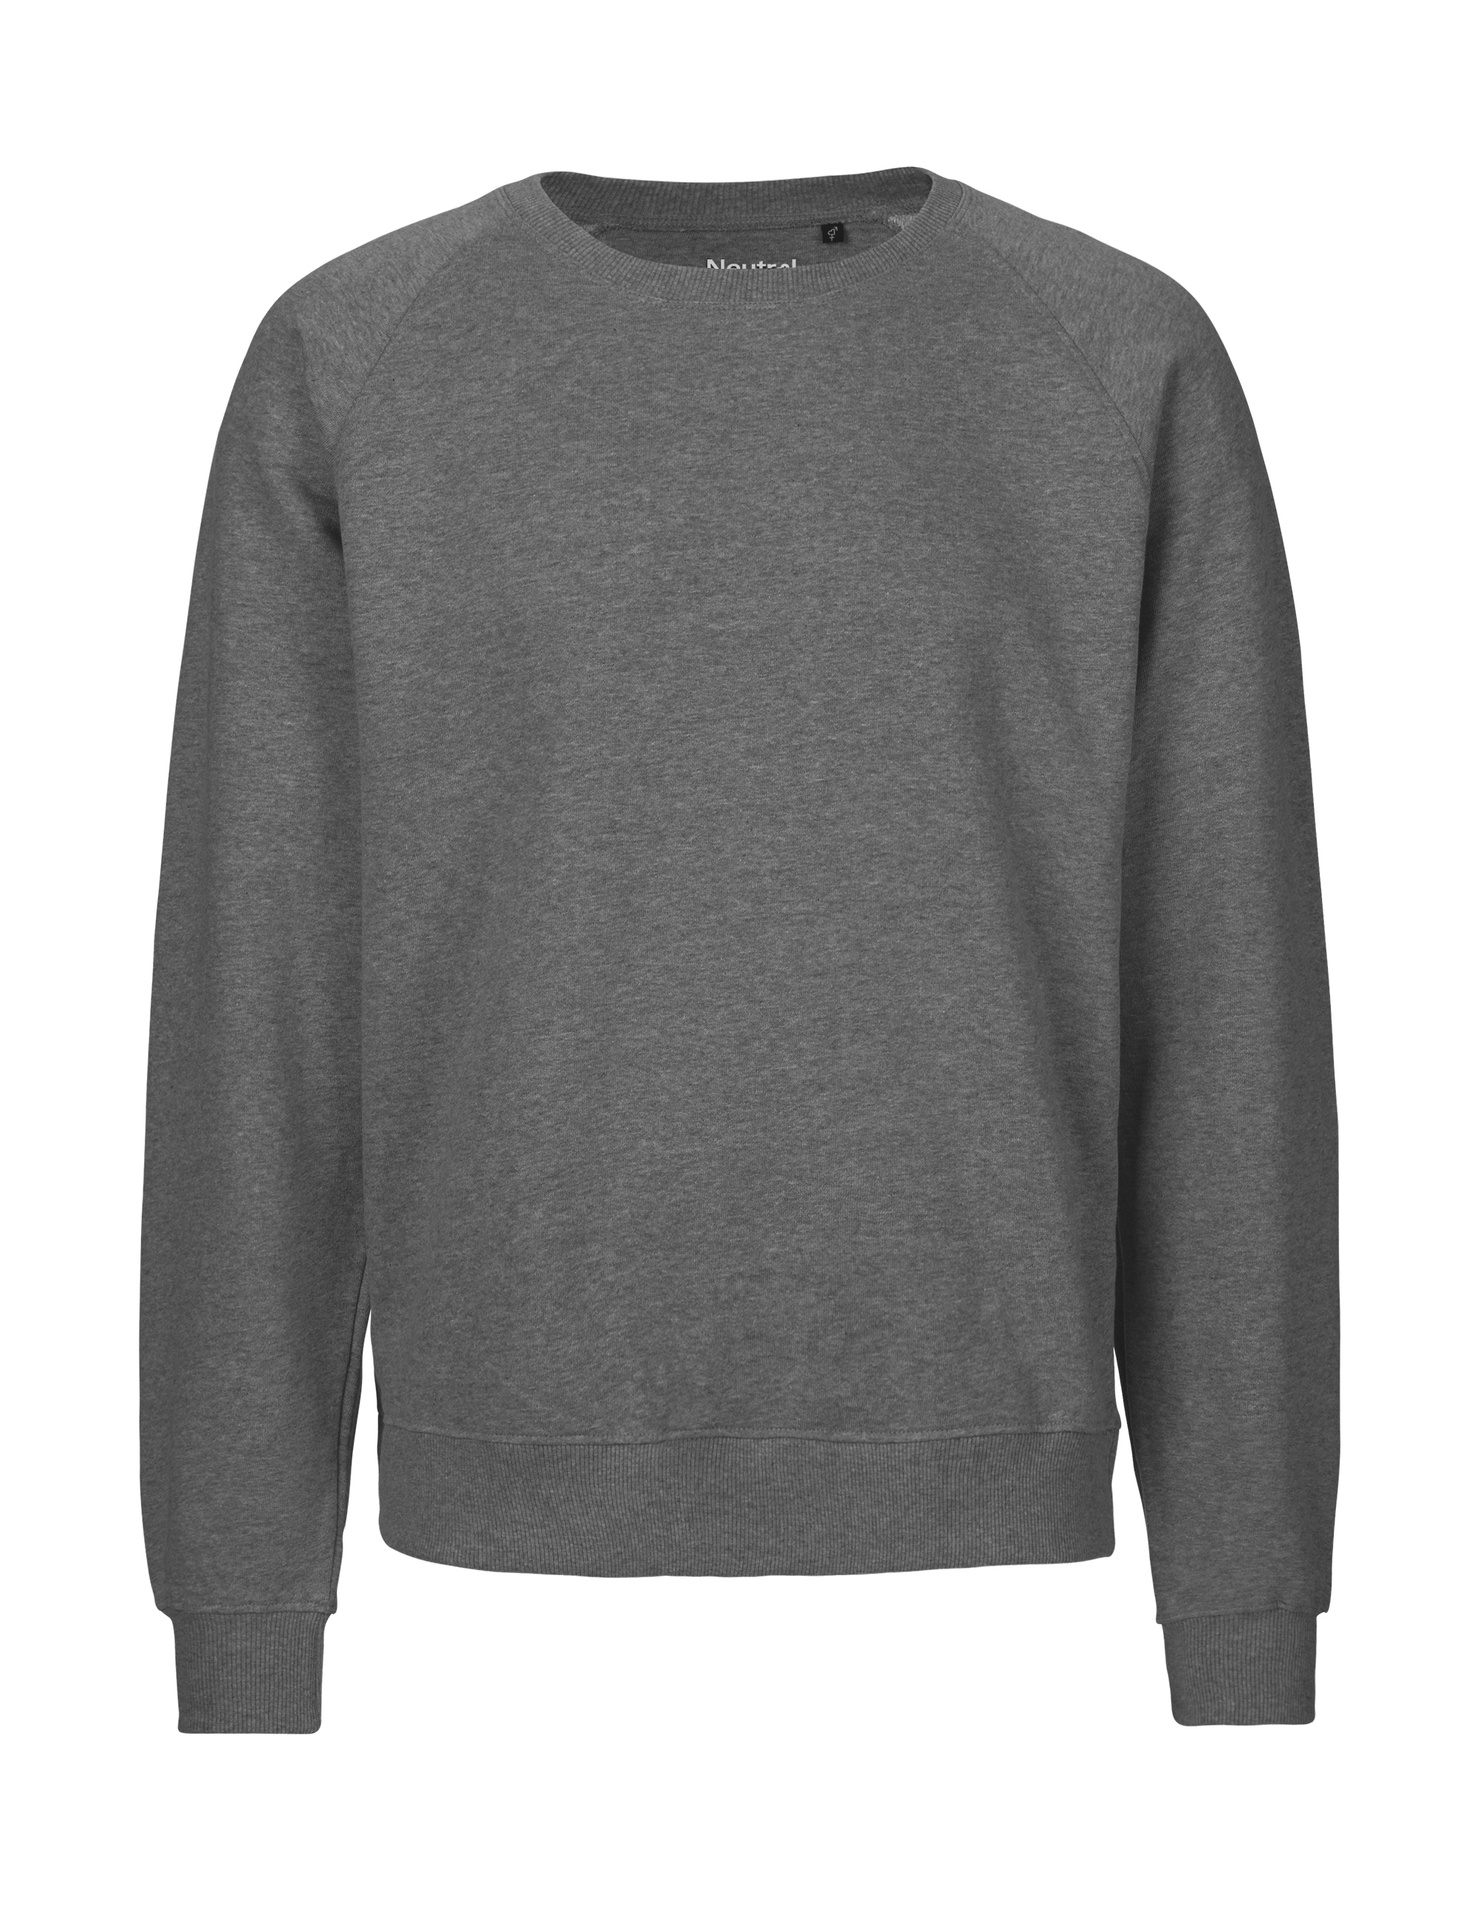 [PR/02700] Unisex Sweatshirt (Dark Heather 08, L)